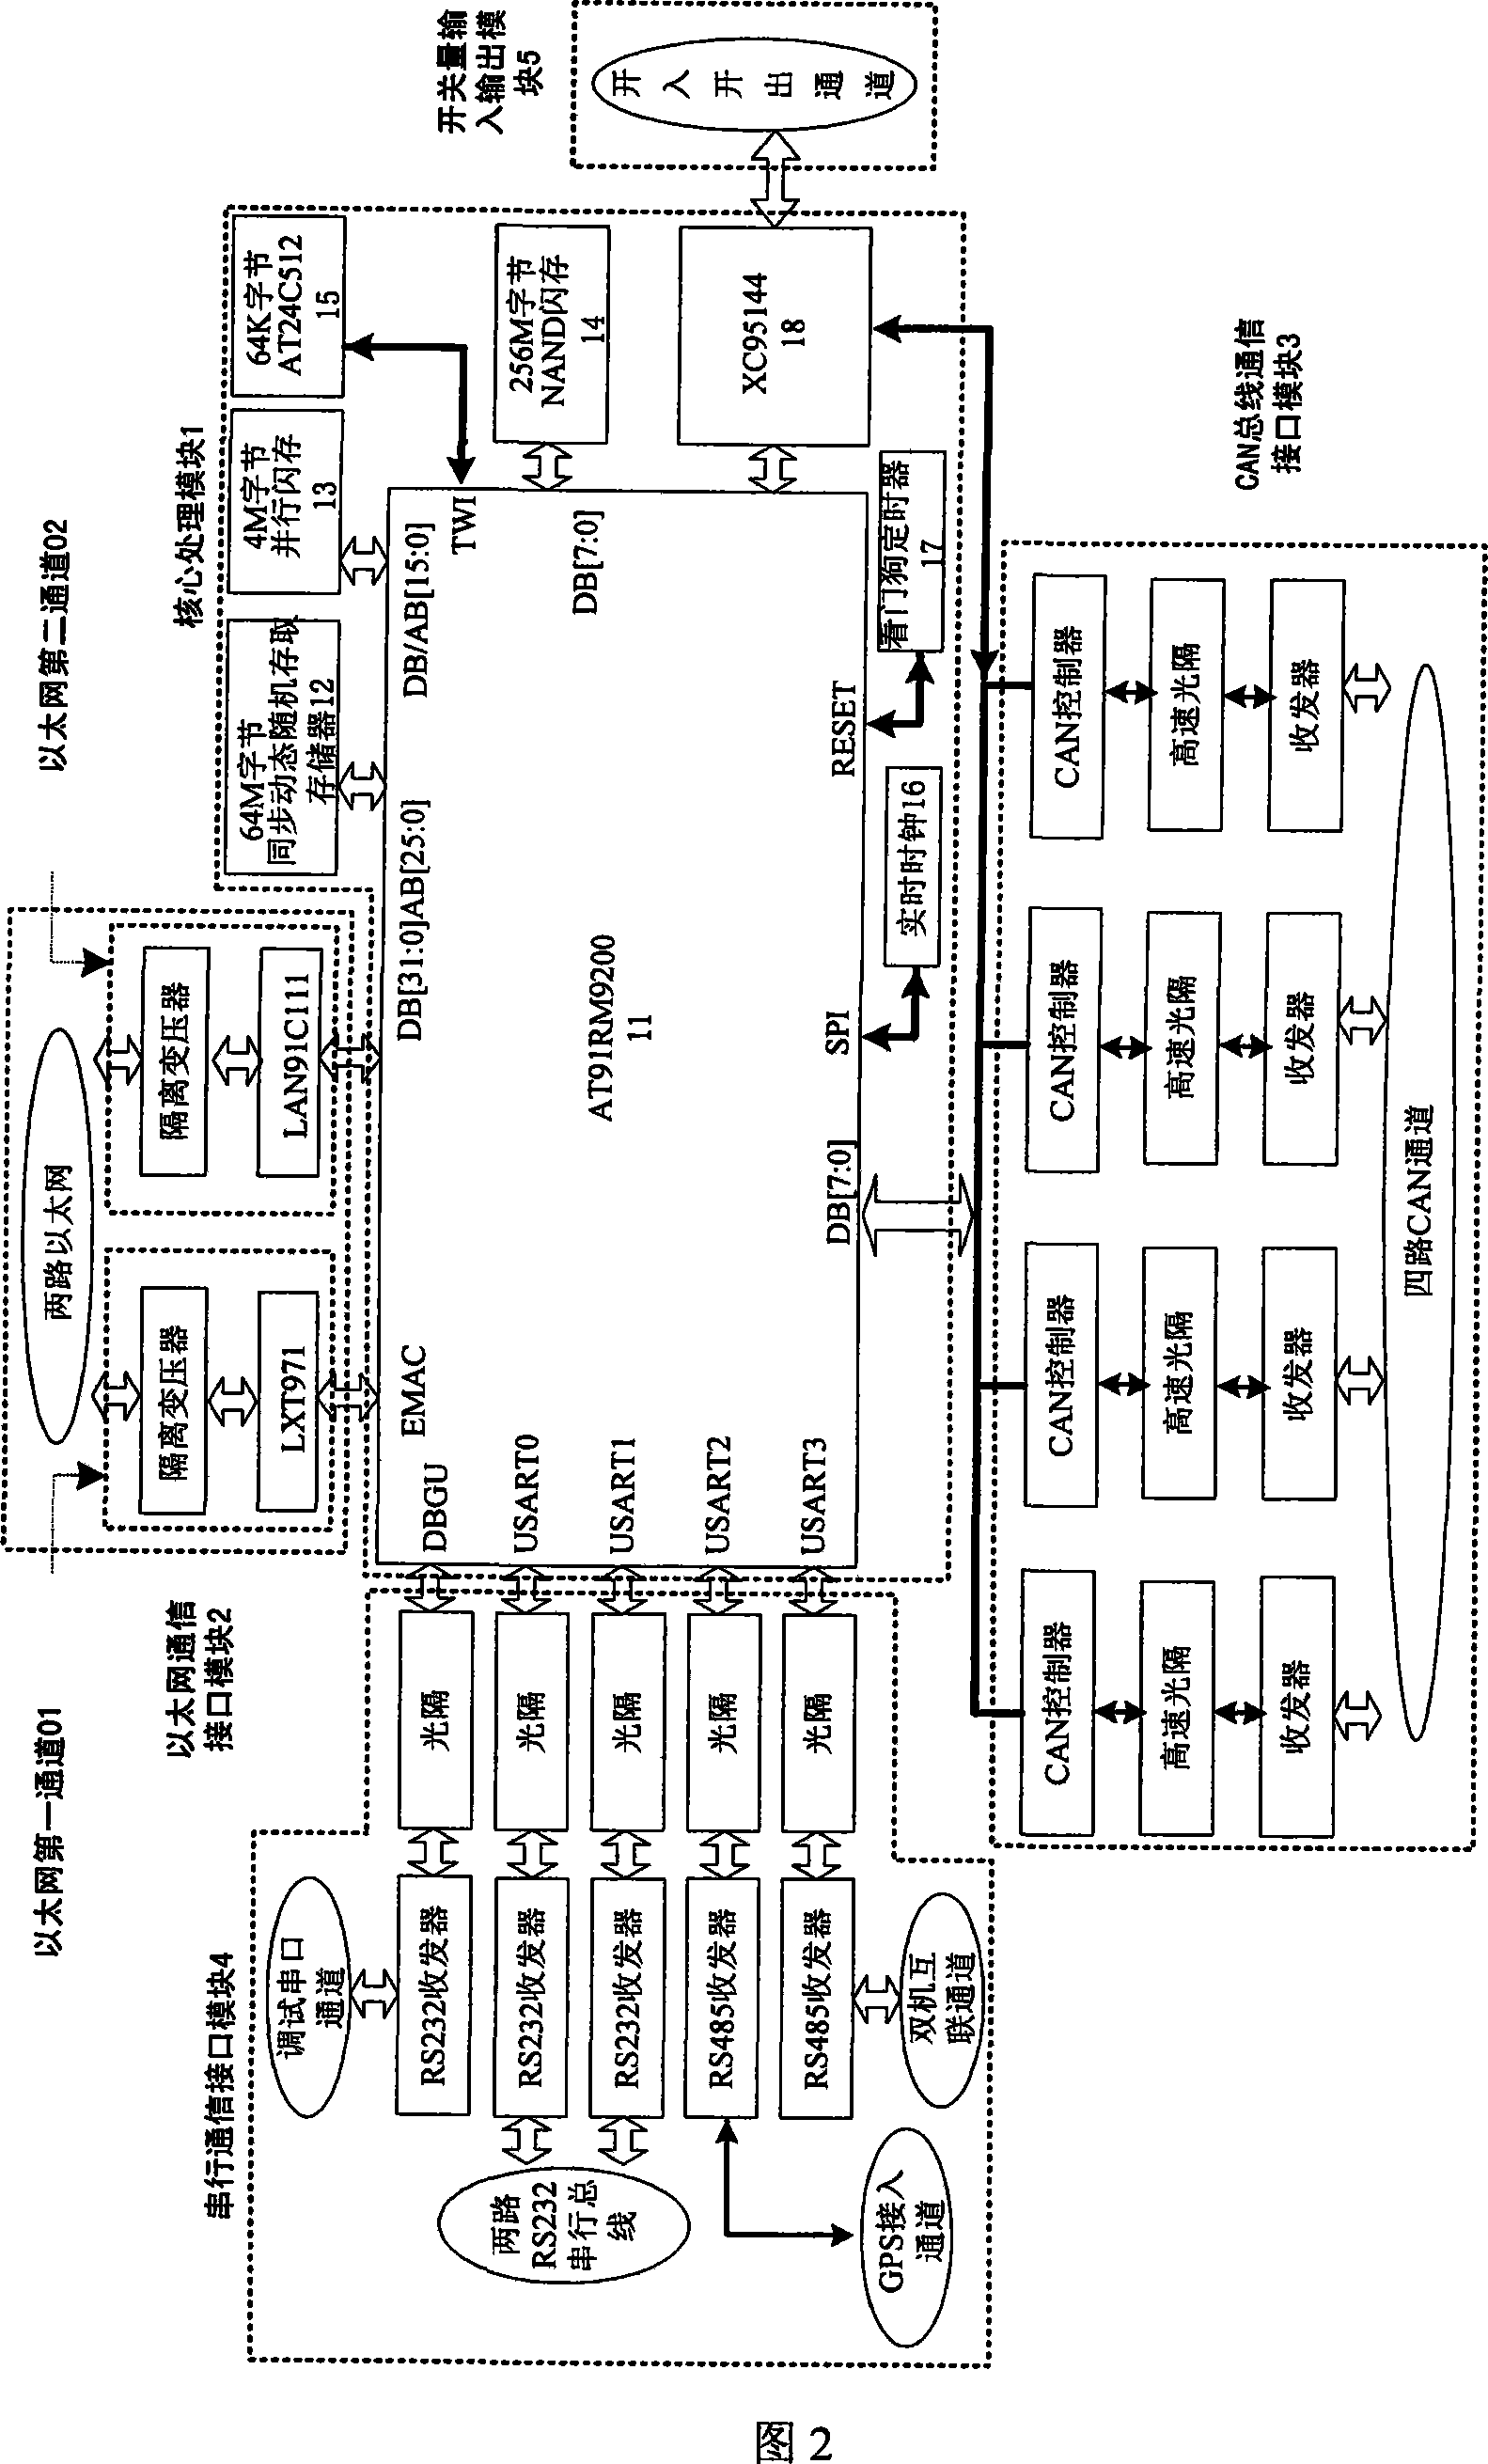 Embedded transformer station information integrated server